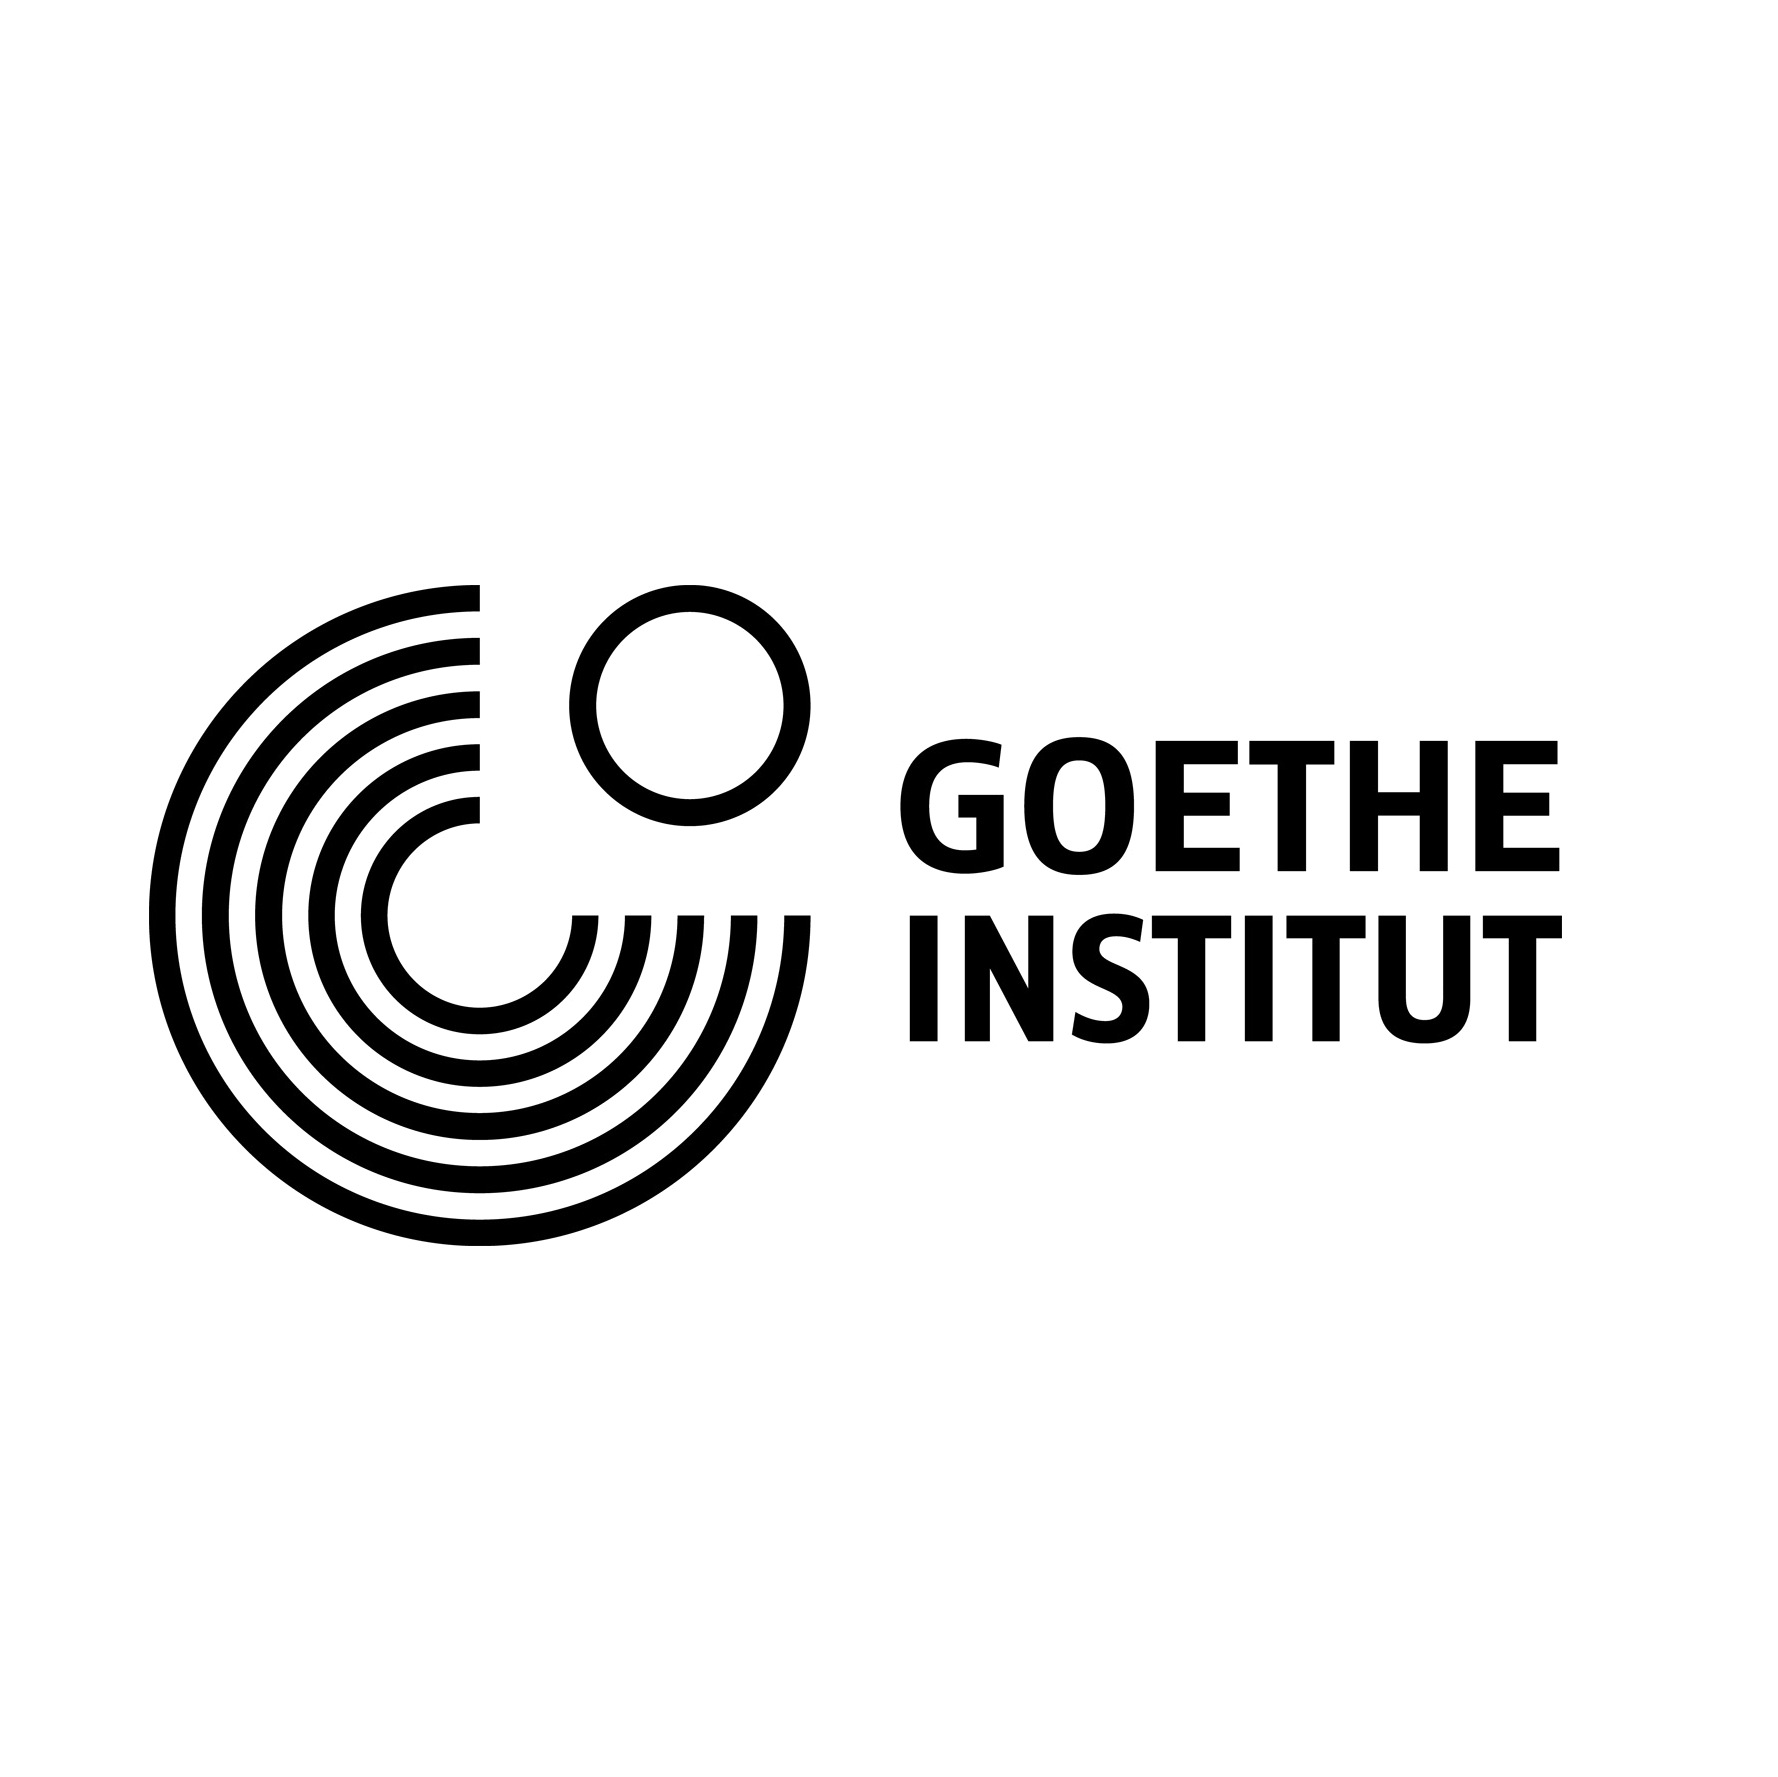 Goethe-Institute logo